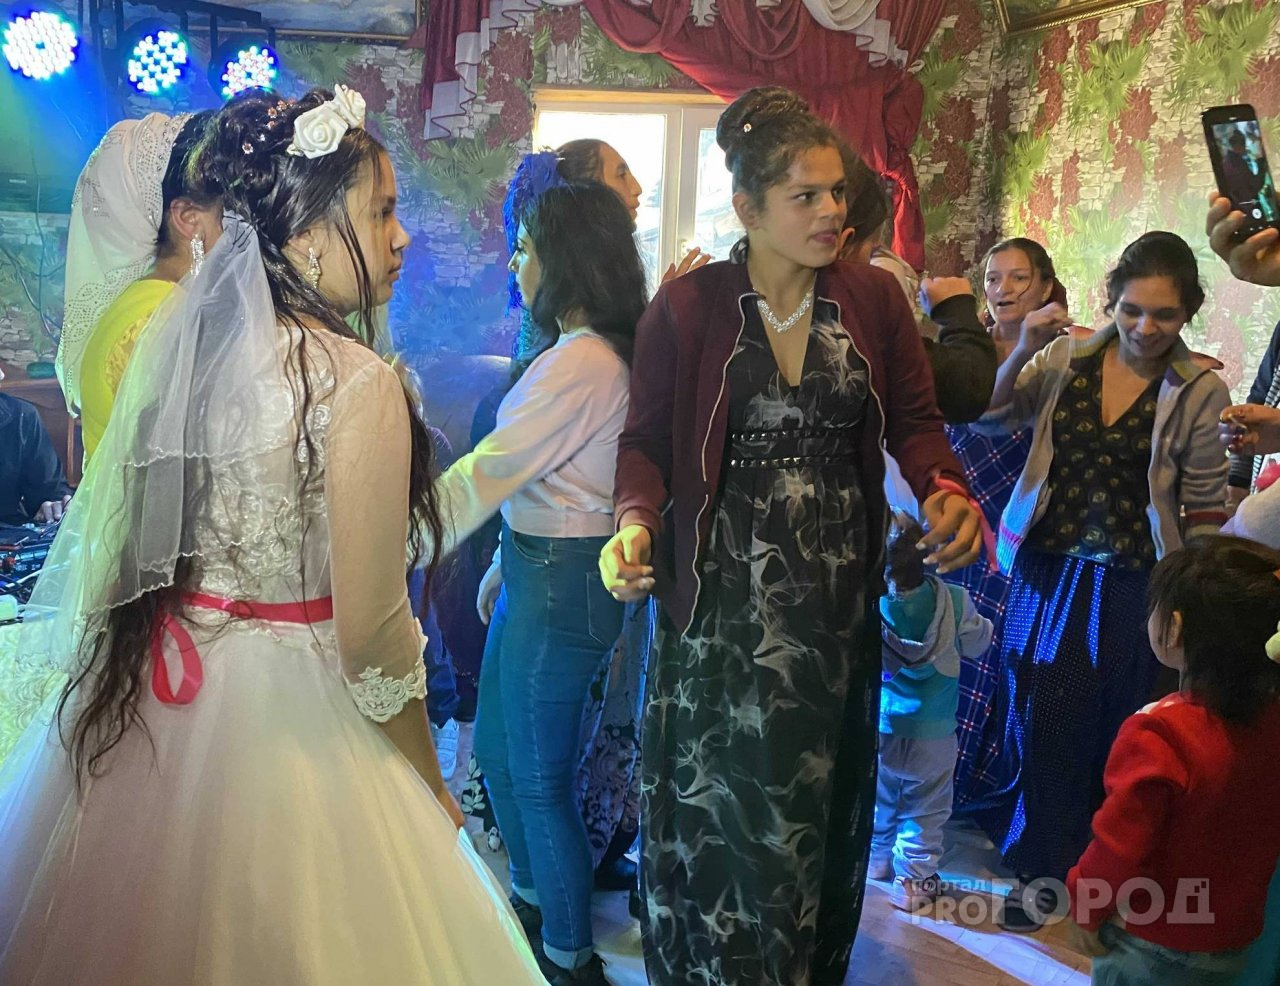 Как играют цыганские свадьбы в Чебоксарах: во сколько выходят замуж, что принято дарить и почему не ходят в ЗАГС